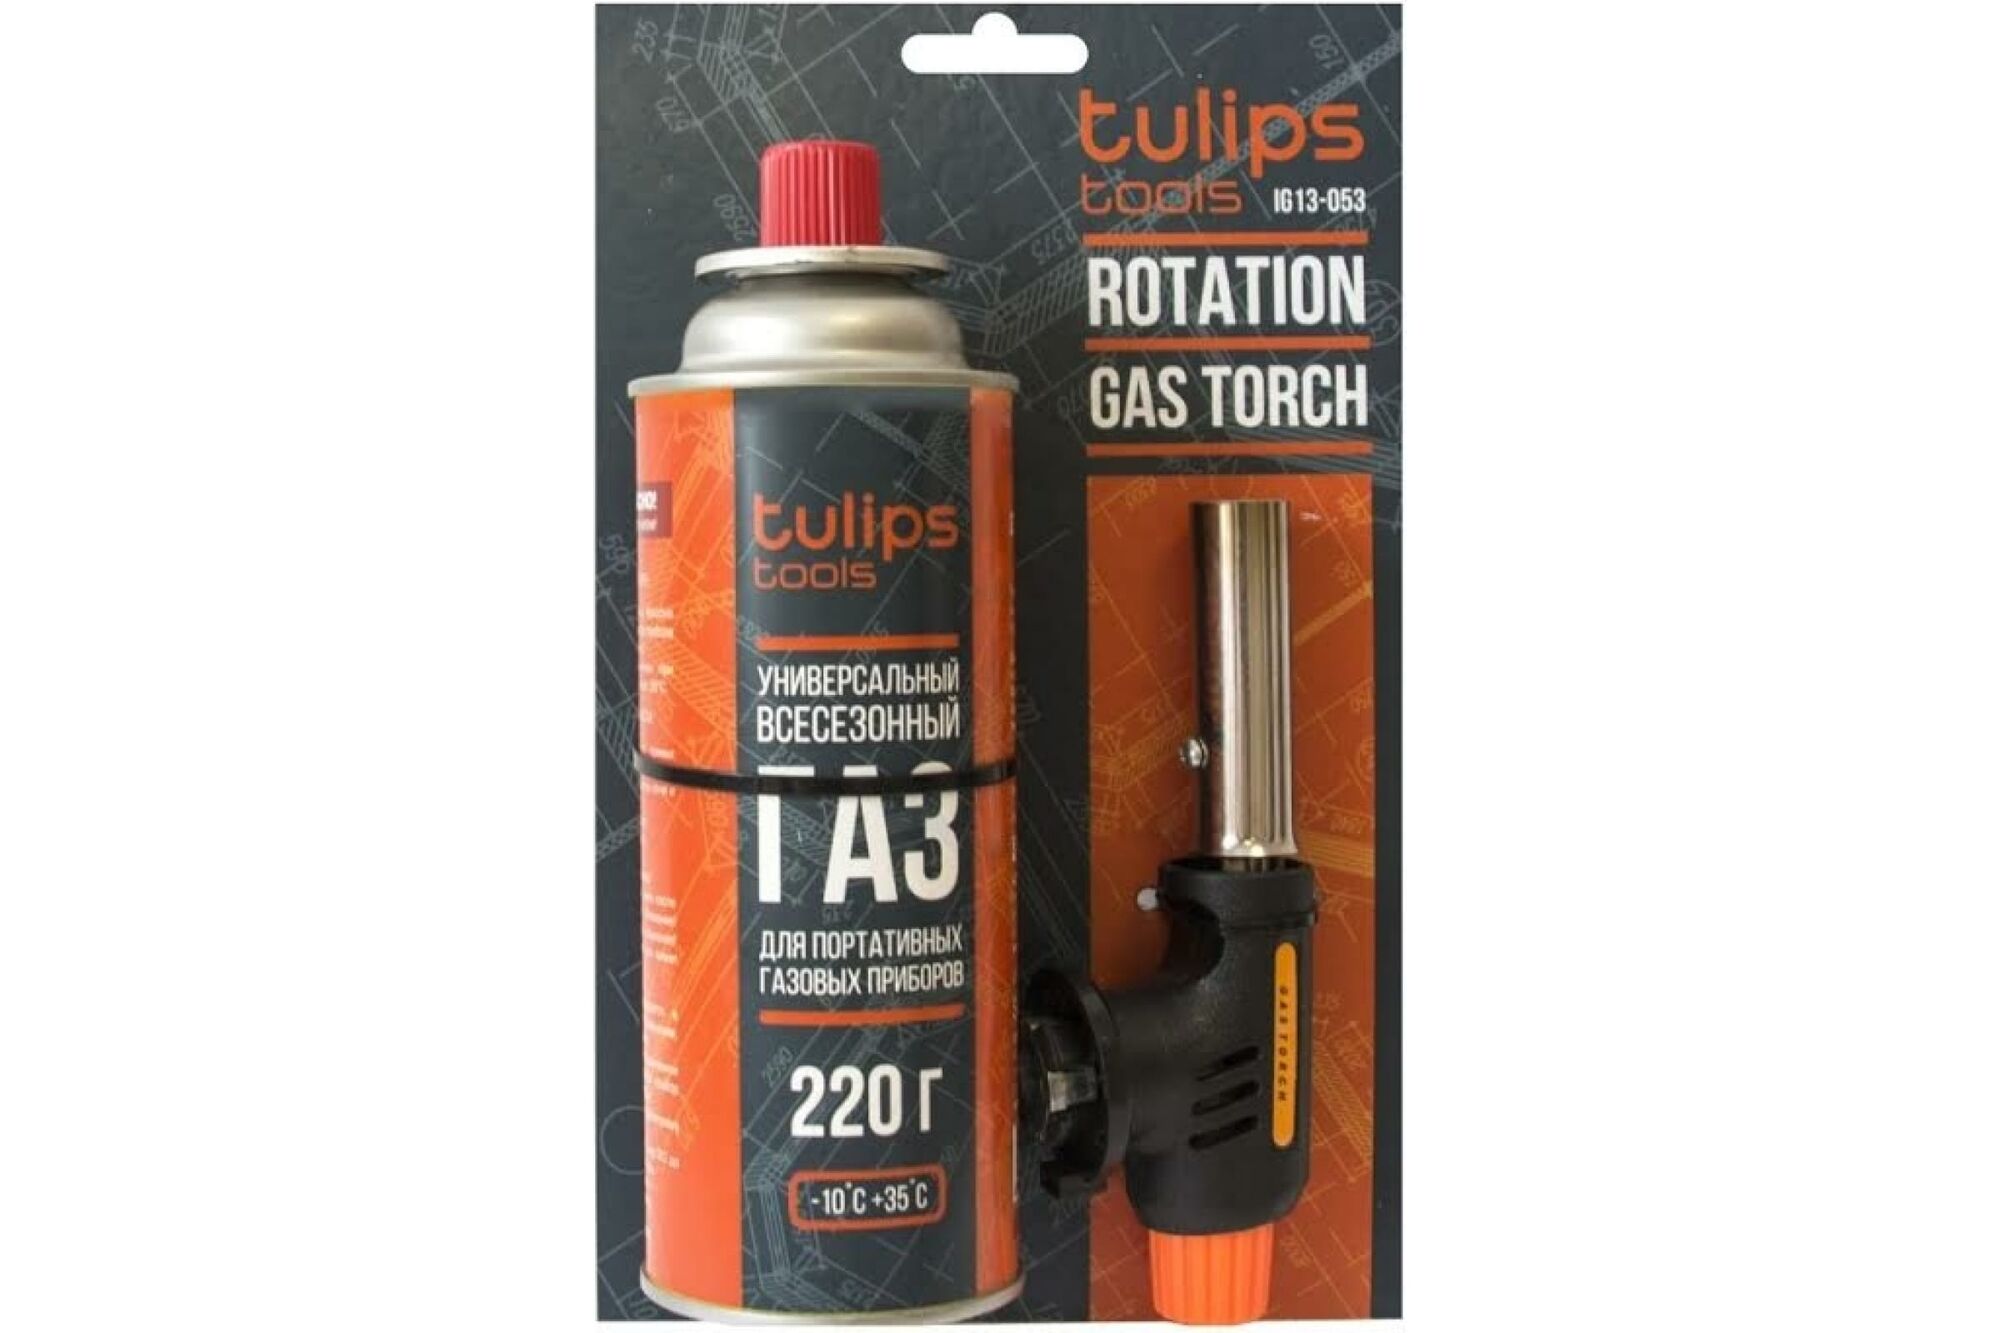 Газовая горелка для free rotation Tulips Tools баллон в комплекте IG13-053